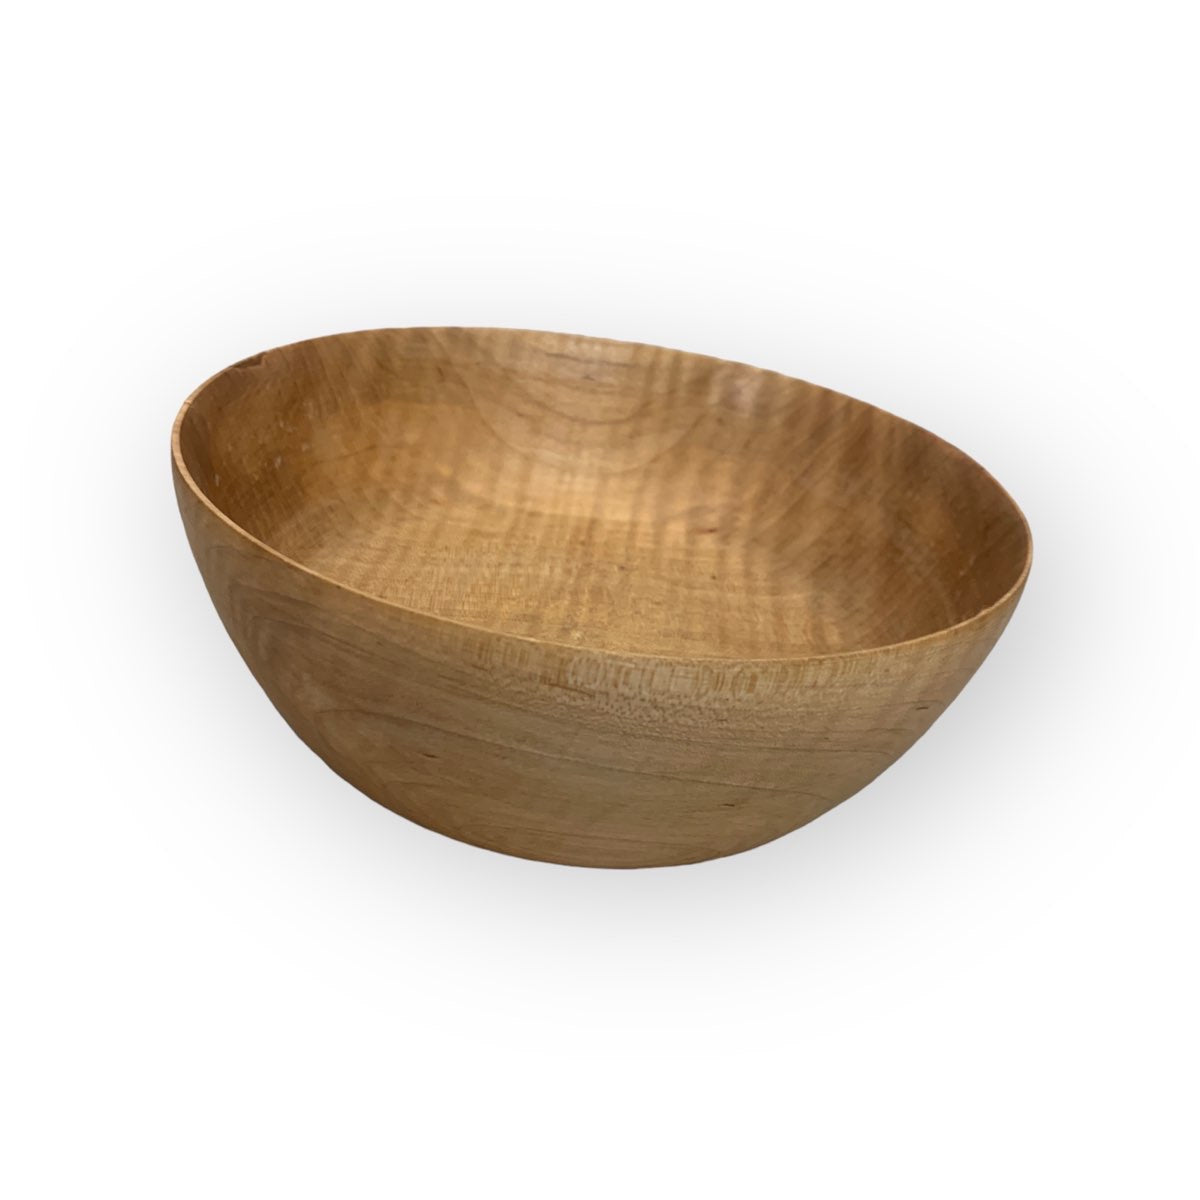 Wood Bowls in Ash by Jon Van Der Nol